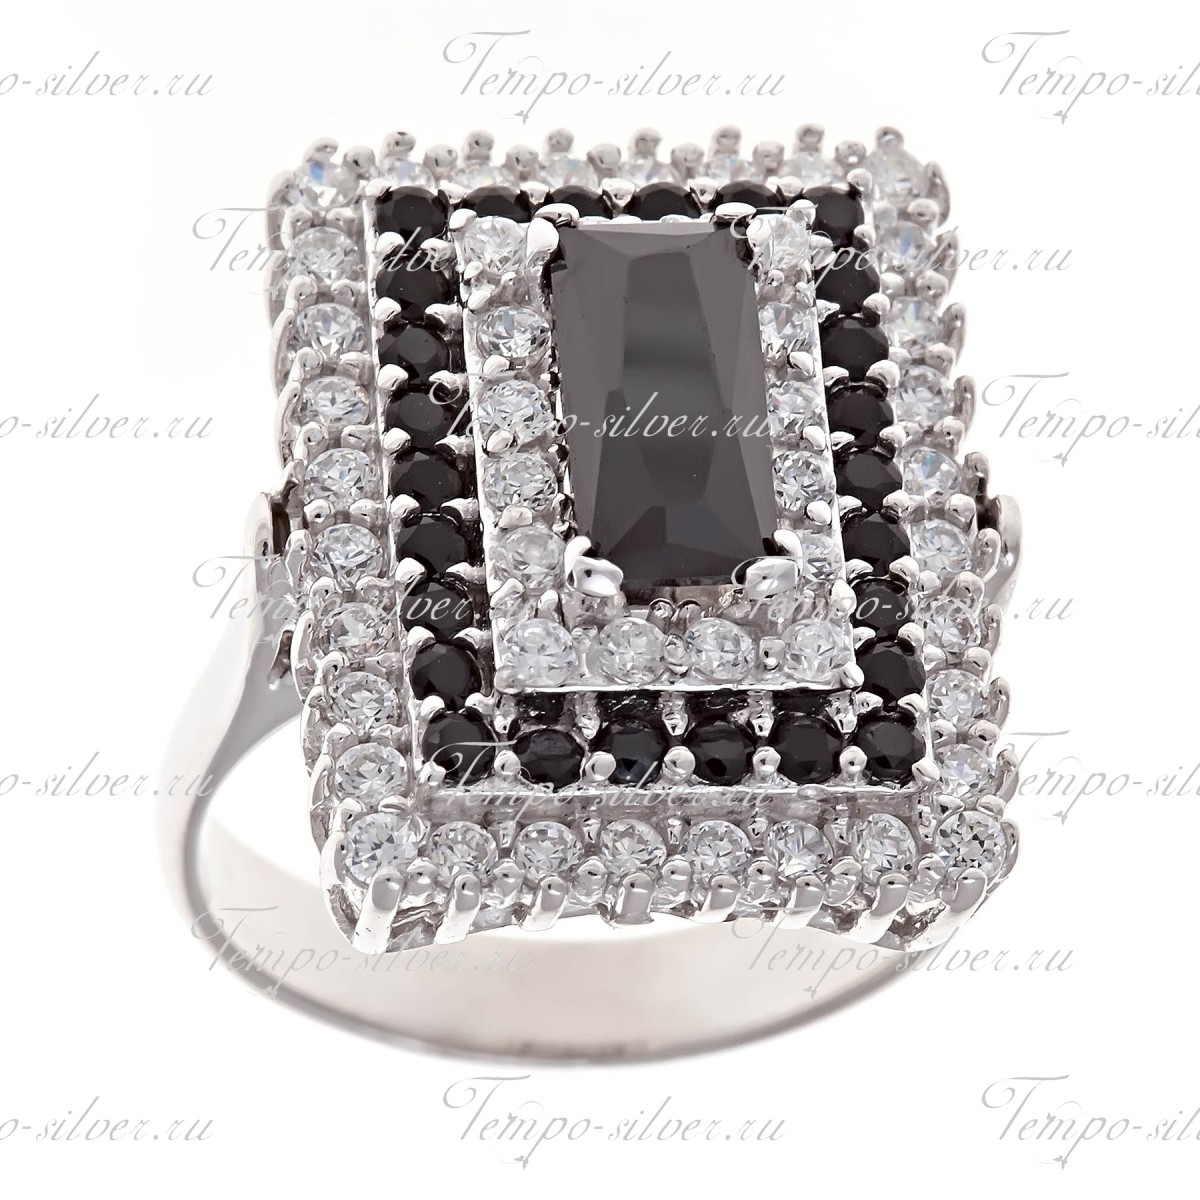 Кольцо из серебра прямоугольной формы с черно-белыми камнями